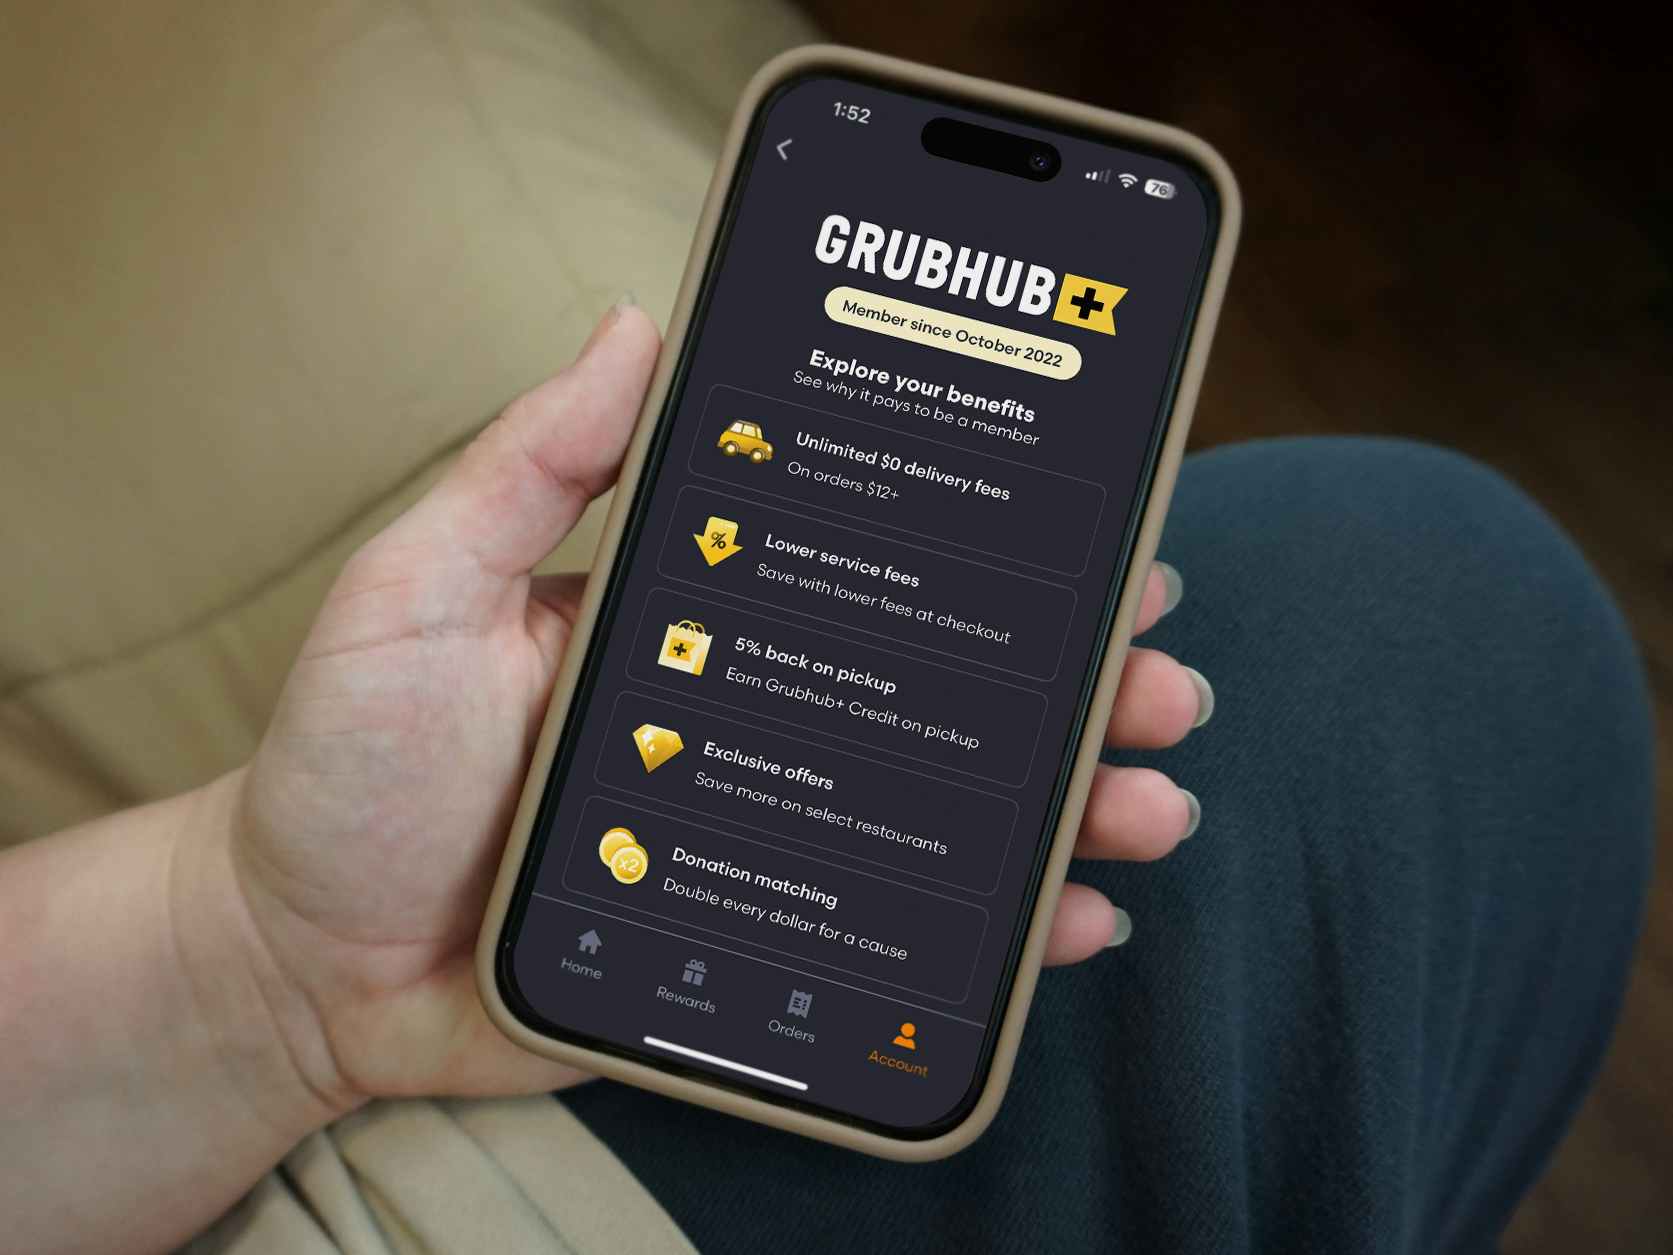 grubhub-plus-membership-deals-app-phone-kcl